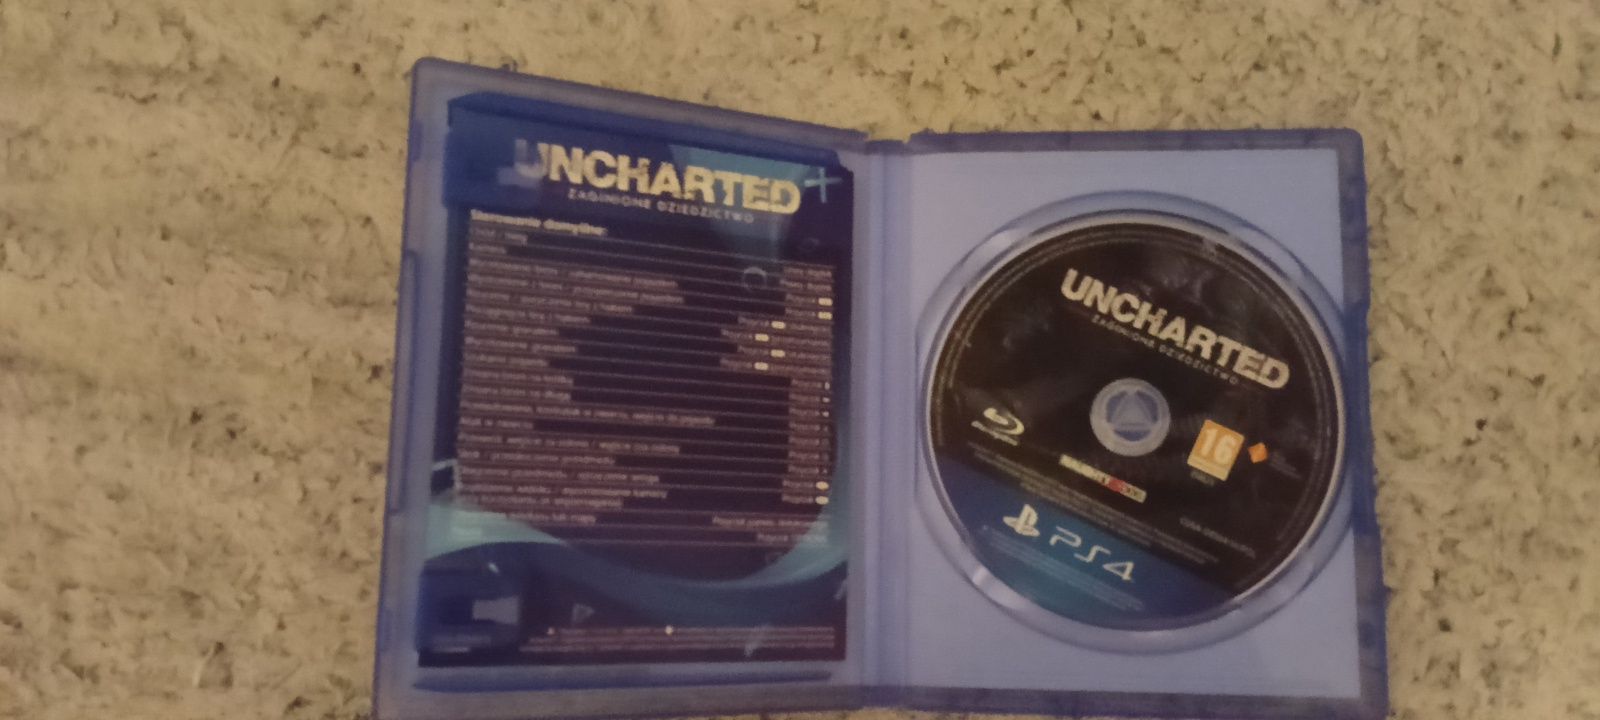 Uncharted Zaginione Dziedzictwo PS4 PL